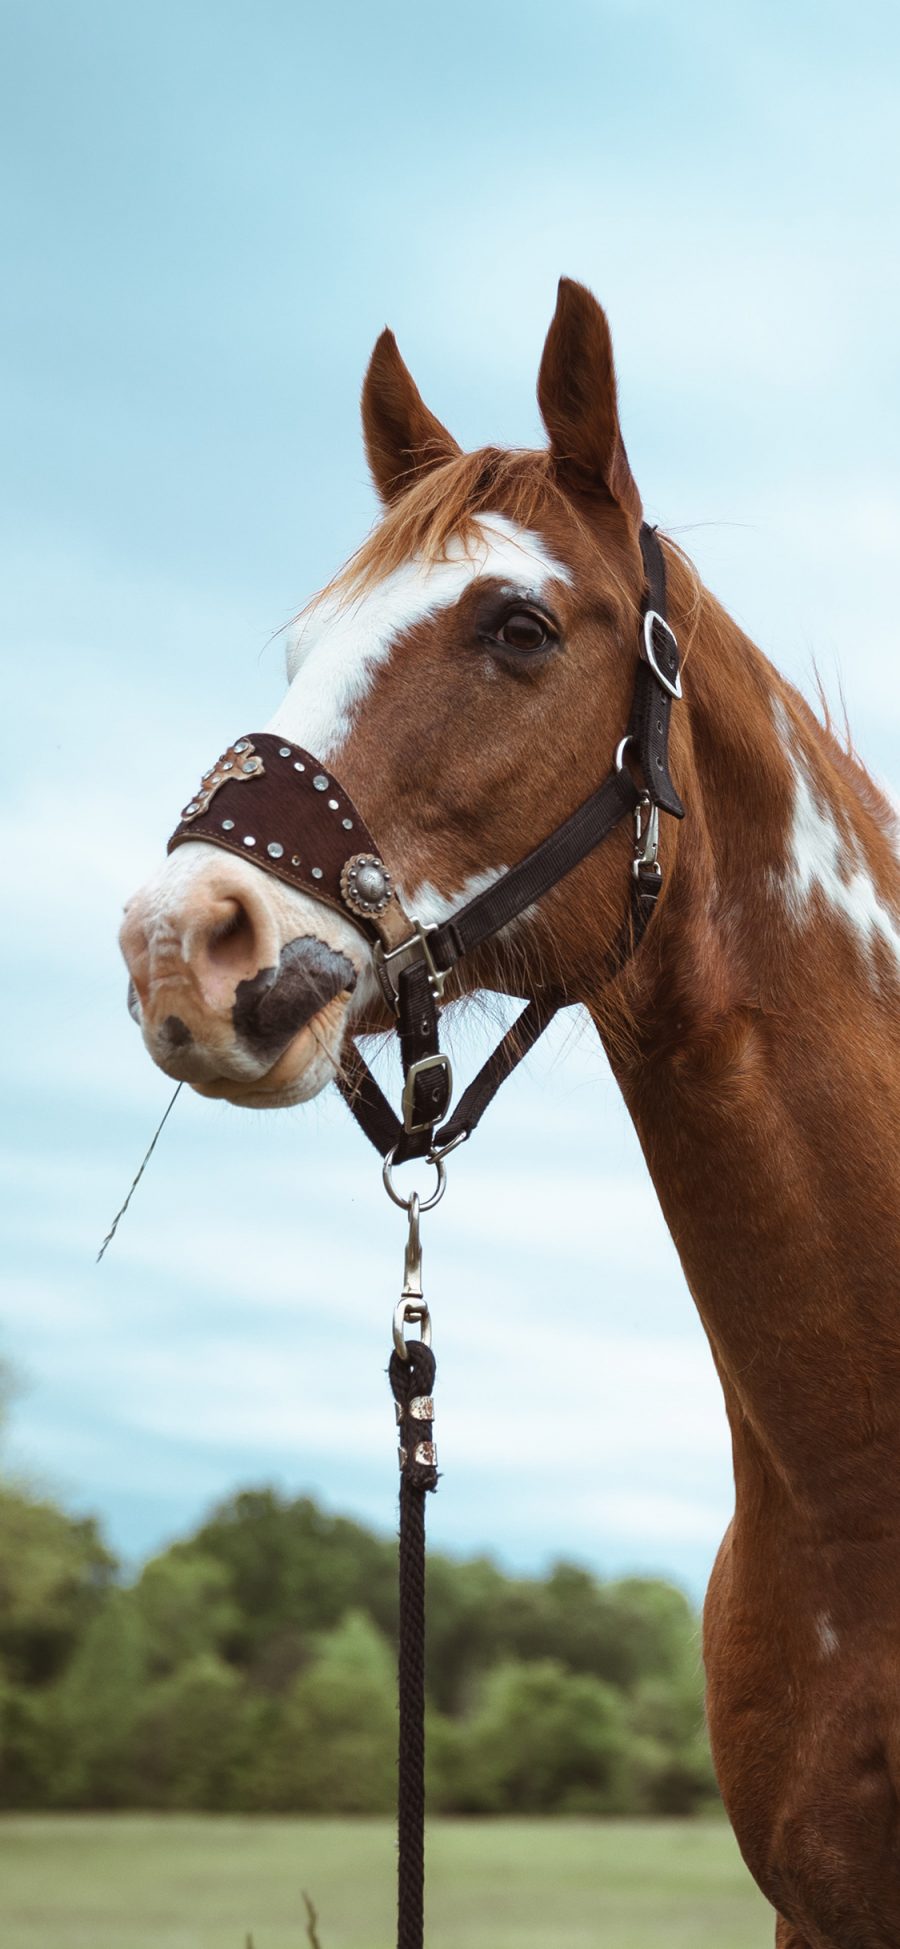 [2436×1125]马匹 牲畜 饲养 缰绳 苹果手机壁纸图片